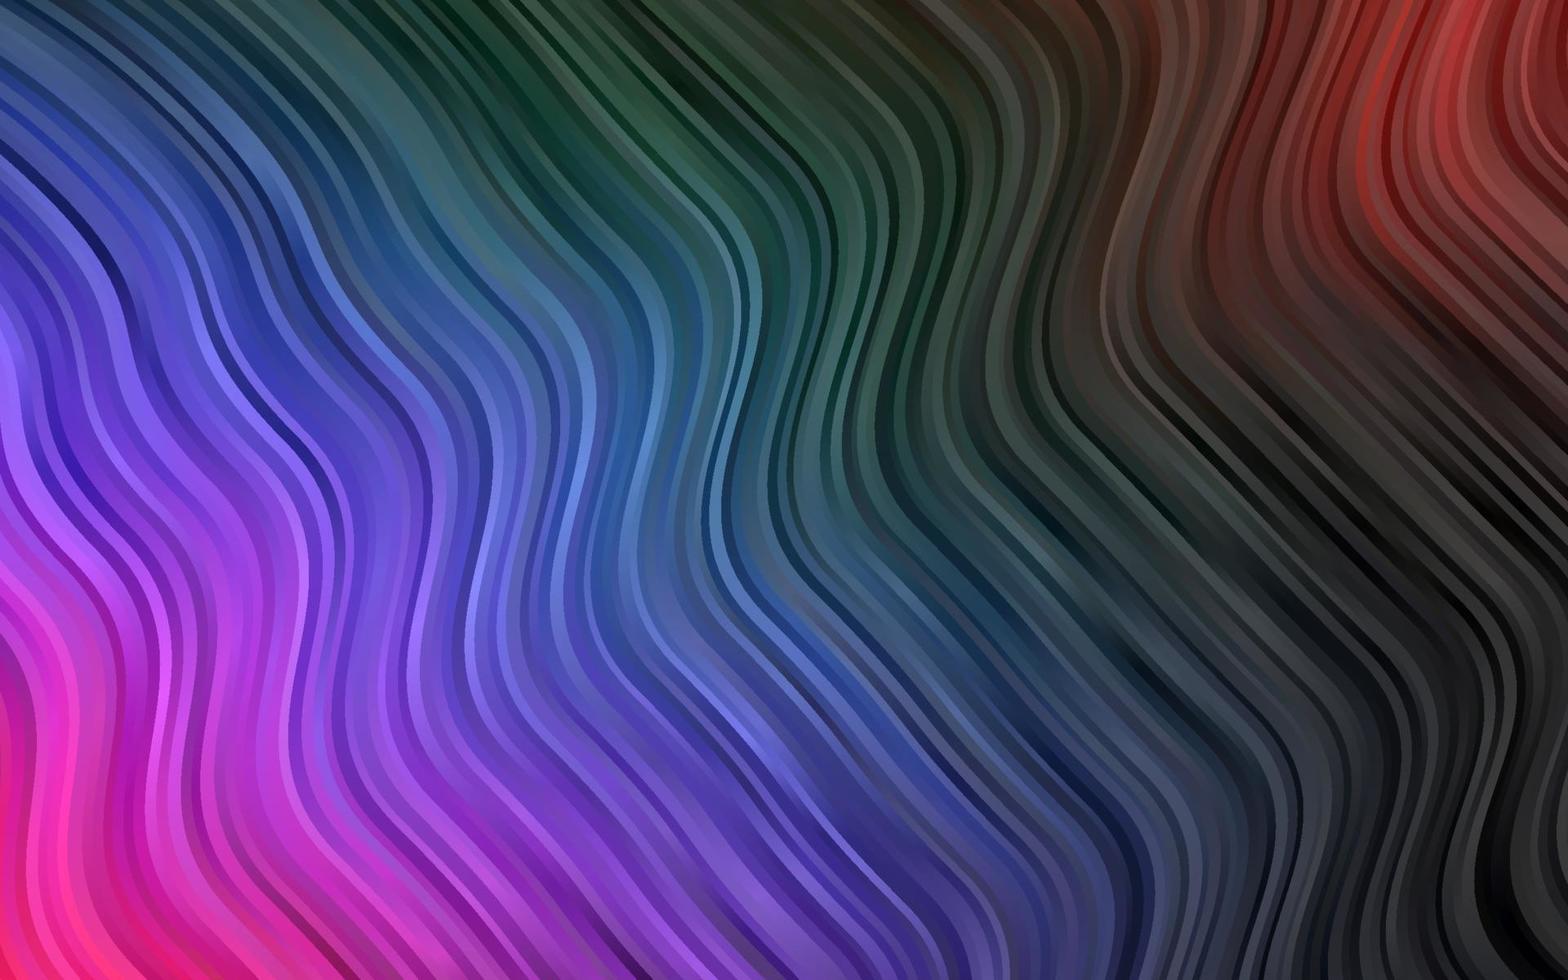 modelo de vetor de arco-íris multicolorido escuro com linhas dobradas.